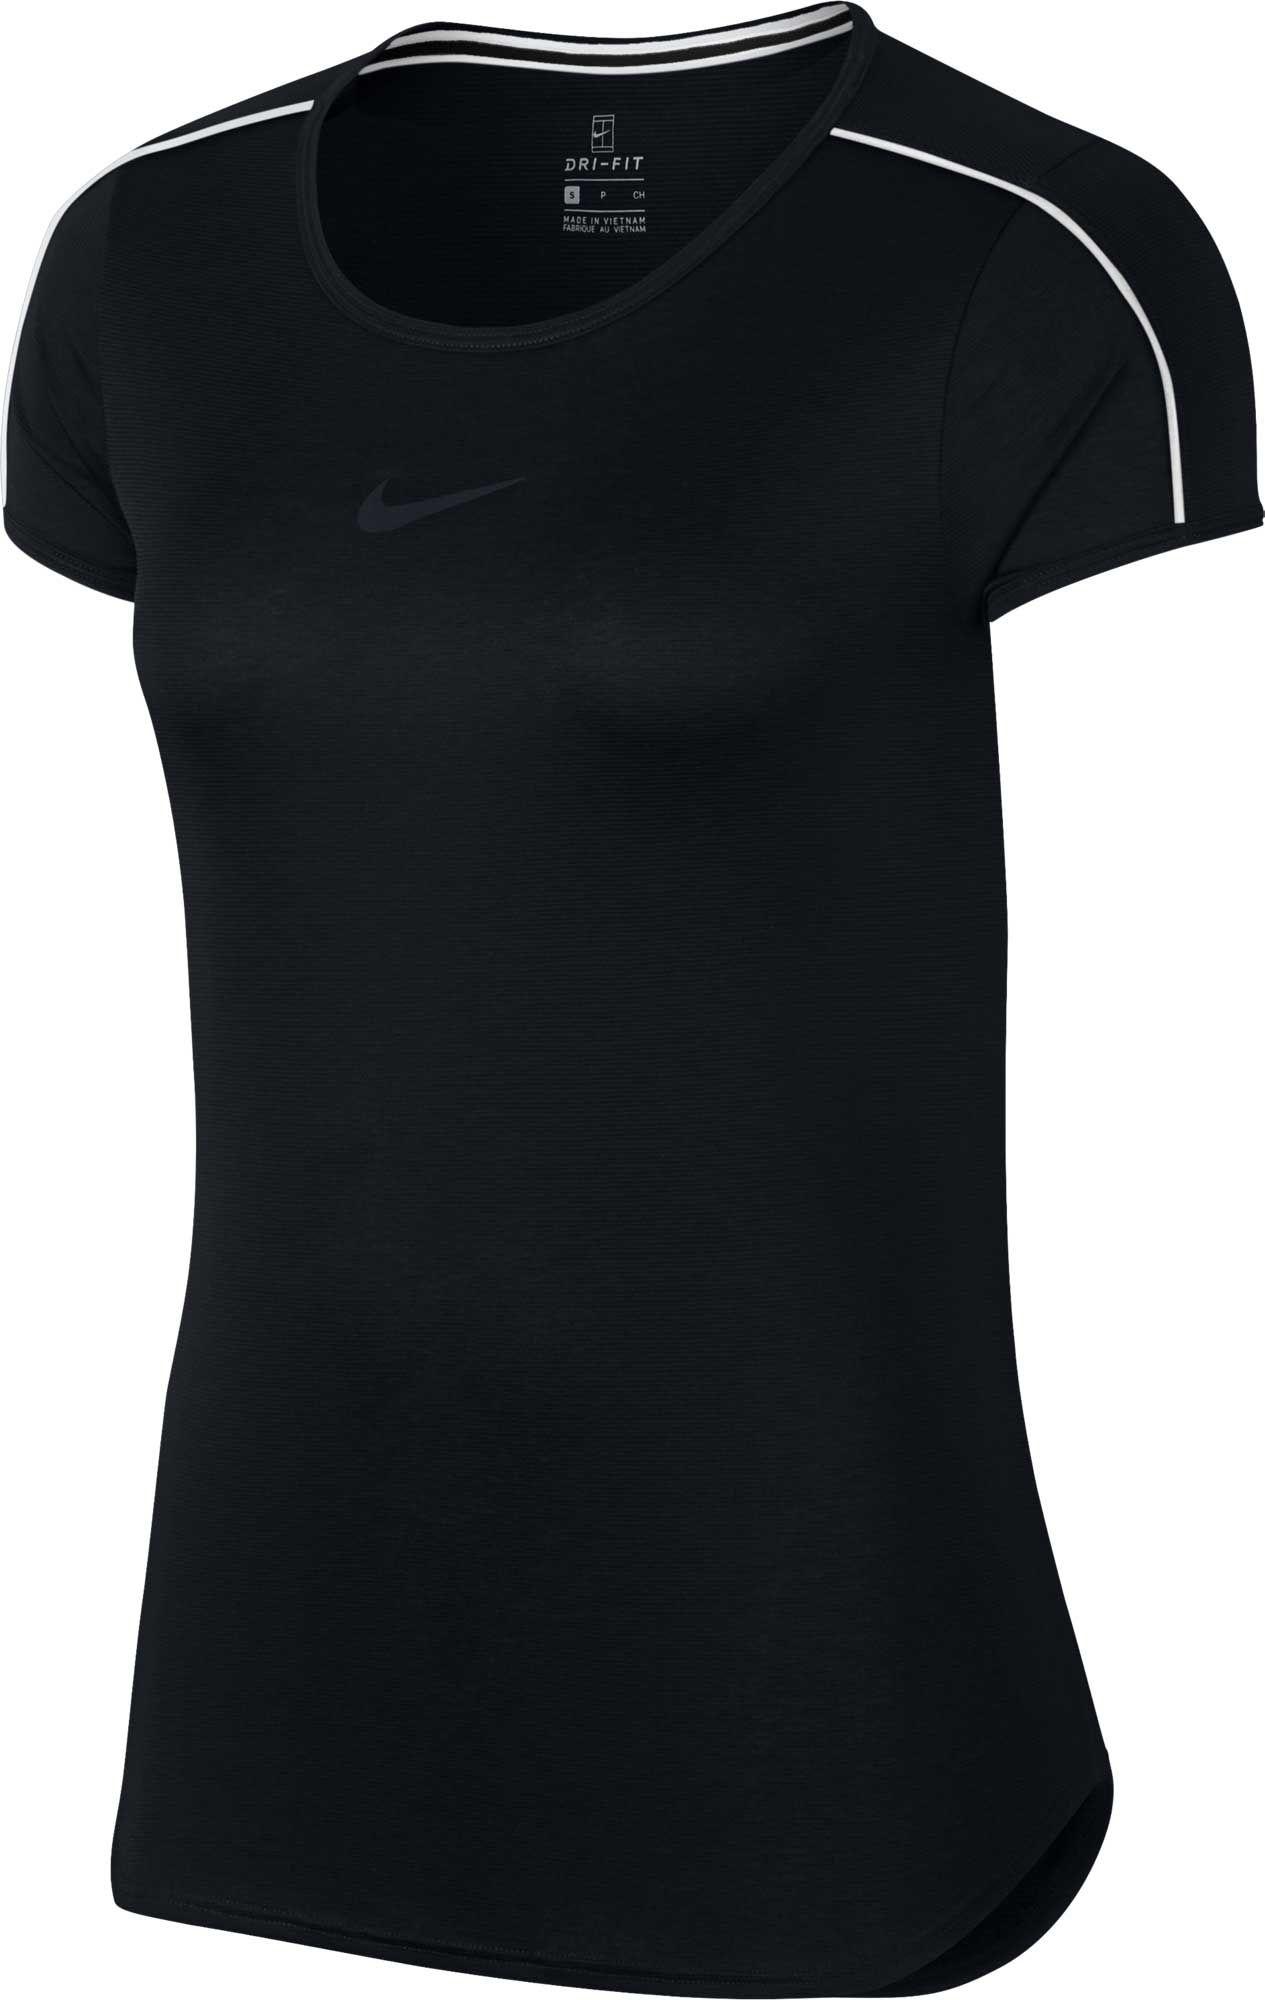 Lyst - Nike Court Dri-fit Tennis T-shirt in Black